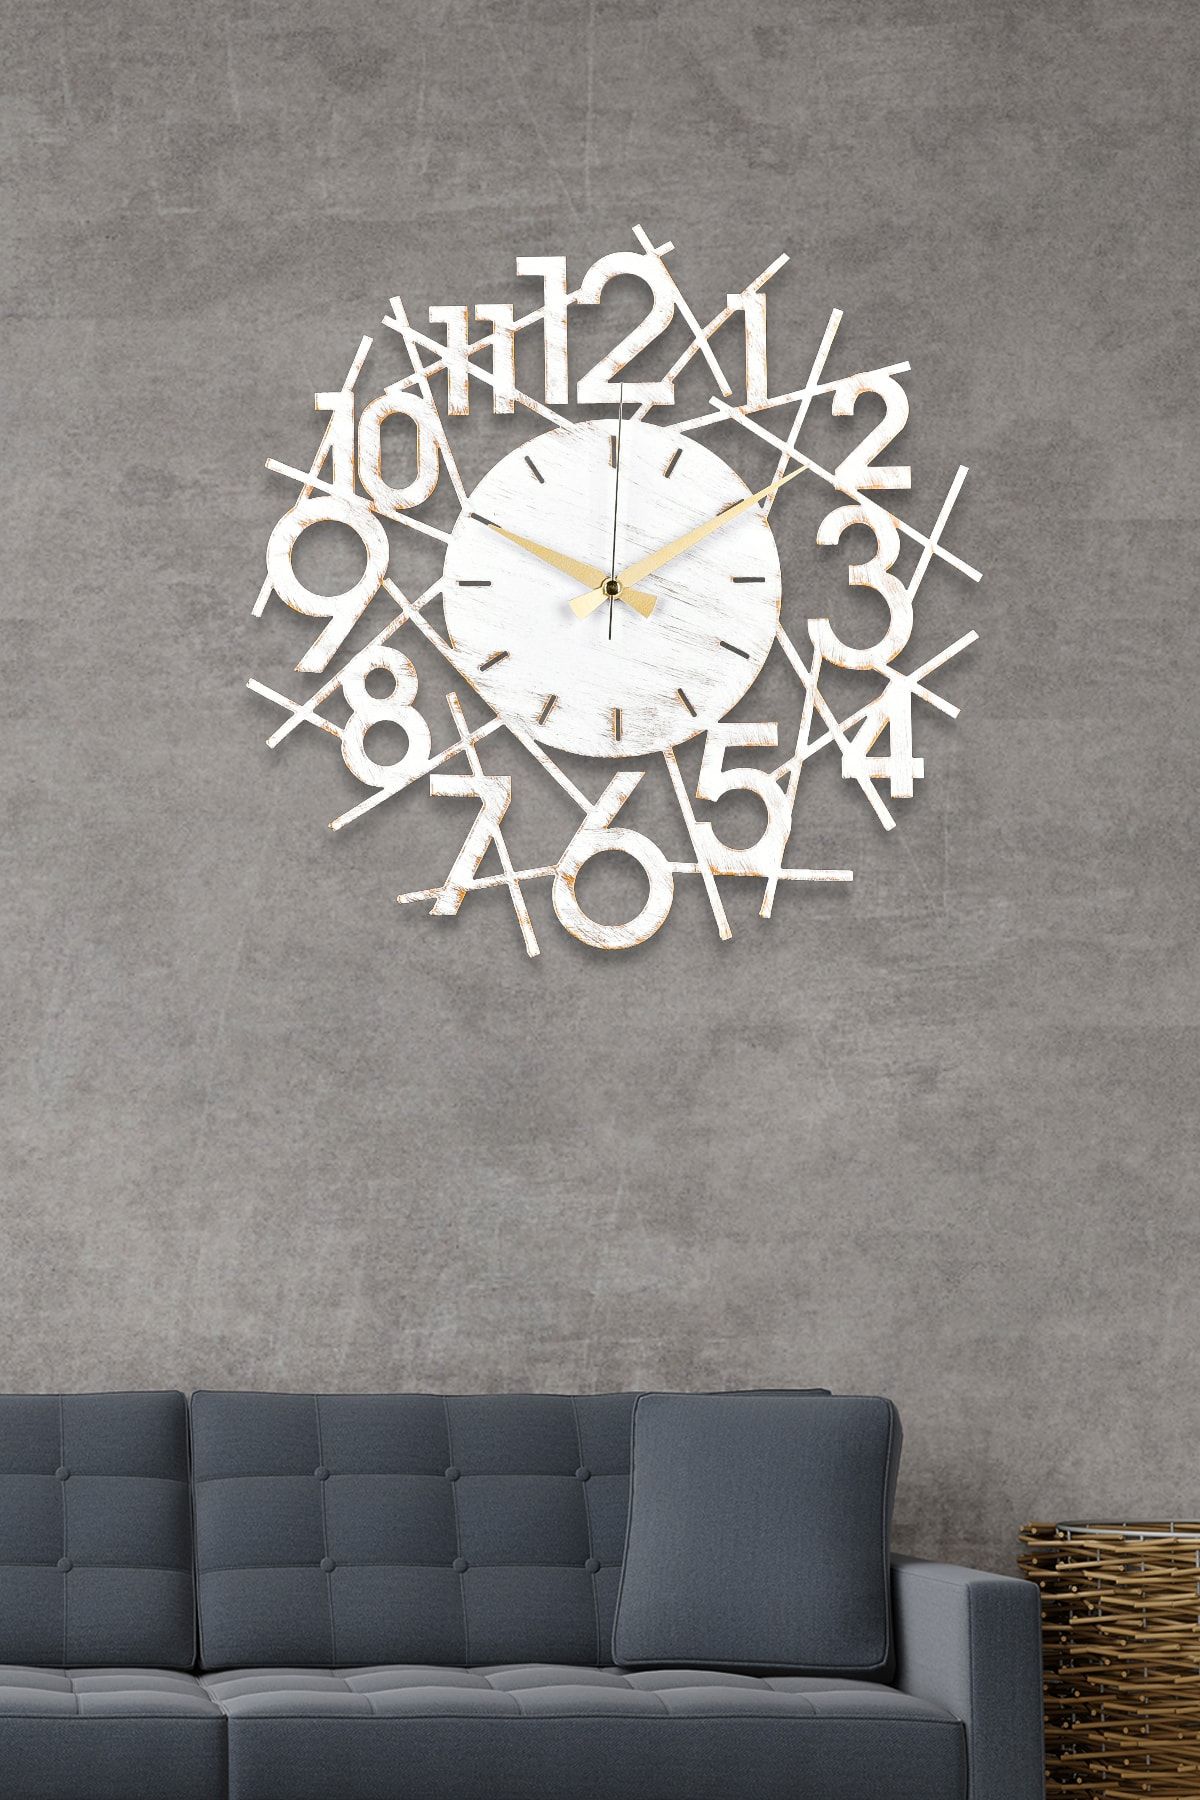 Muyika Design Muyika Karde Yeni Koleksiyon Dekoratif Metal Beyaz Eskitme Duvar Saati 41x41cm Mds-41